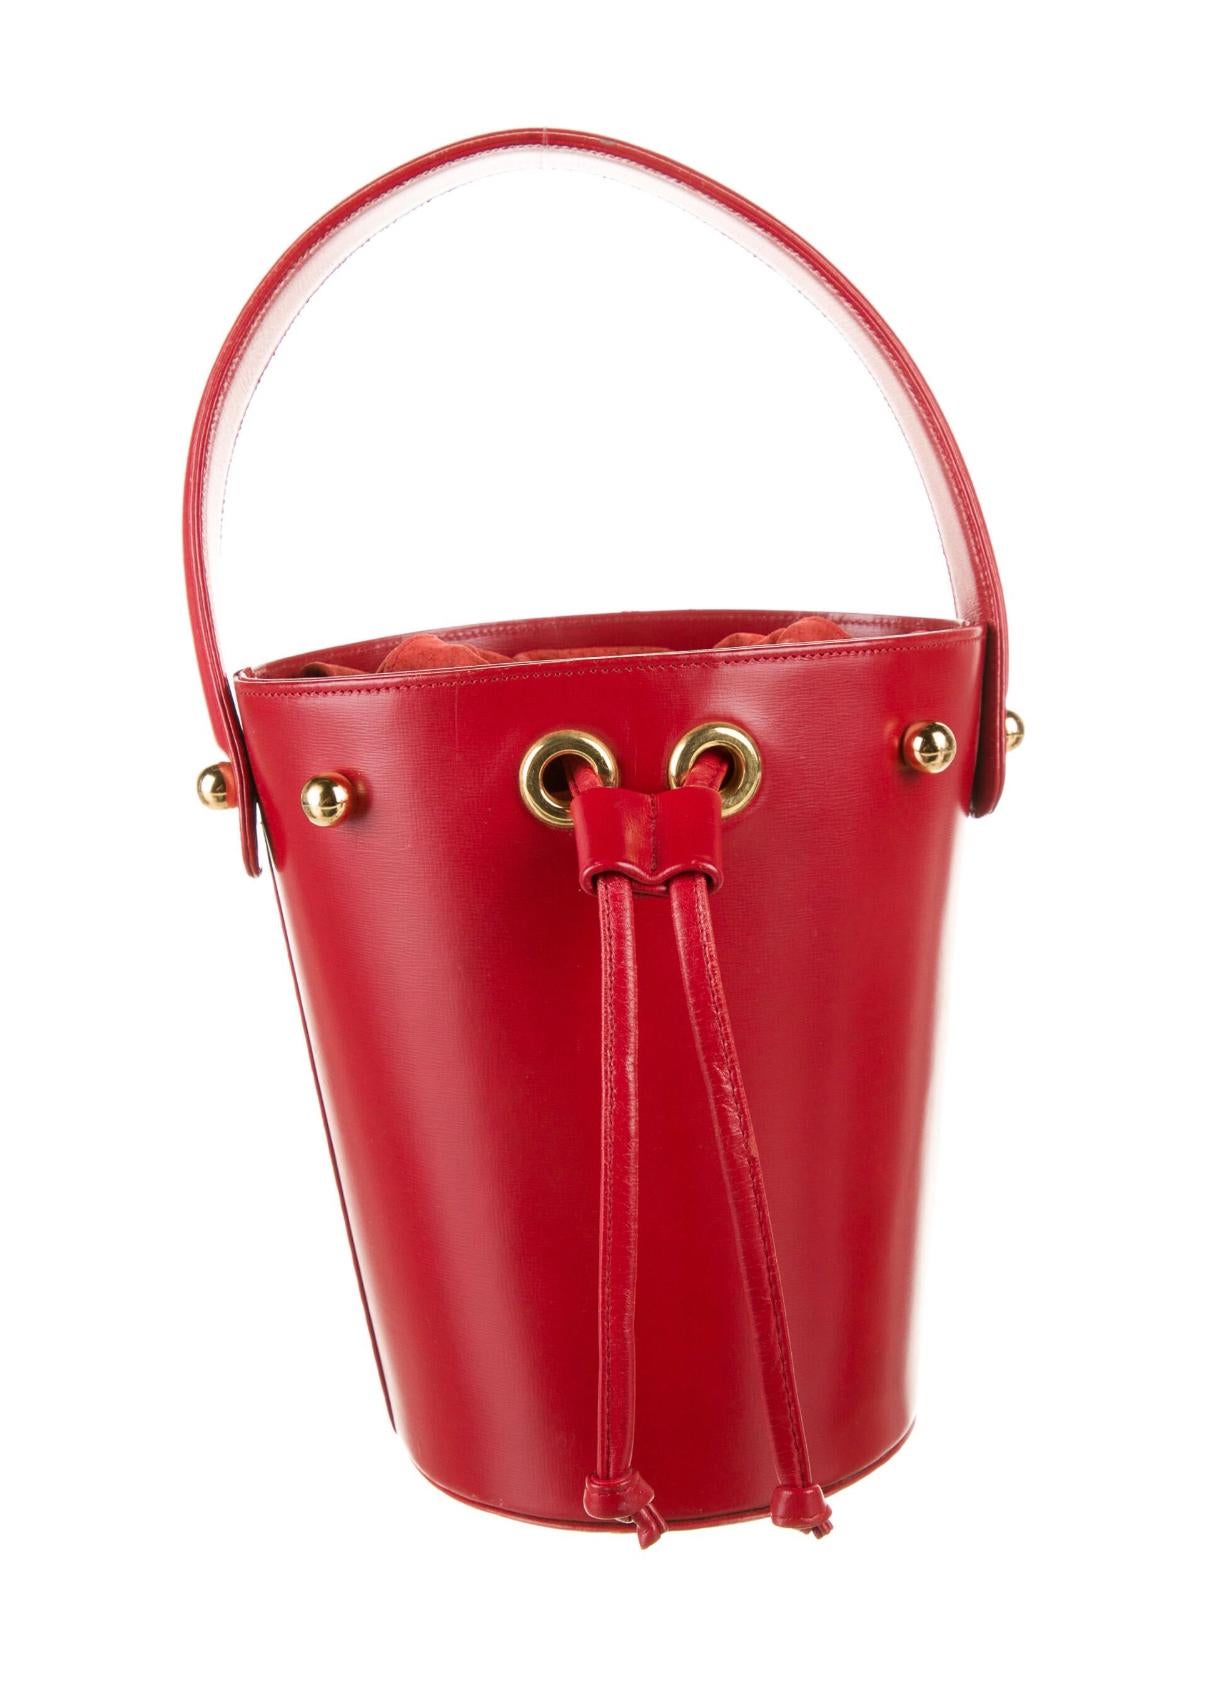 Paloma Picasso rote Eimertasche aus Leder. Zustand: Sehr gut.